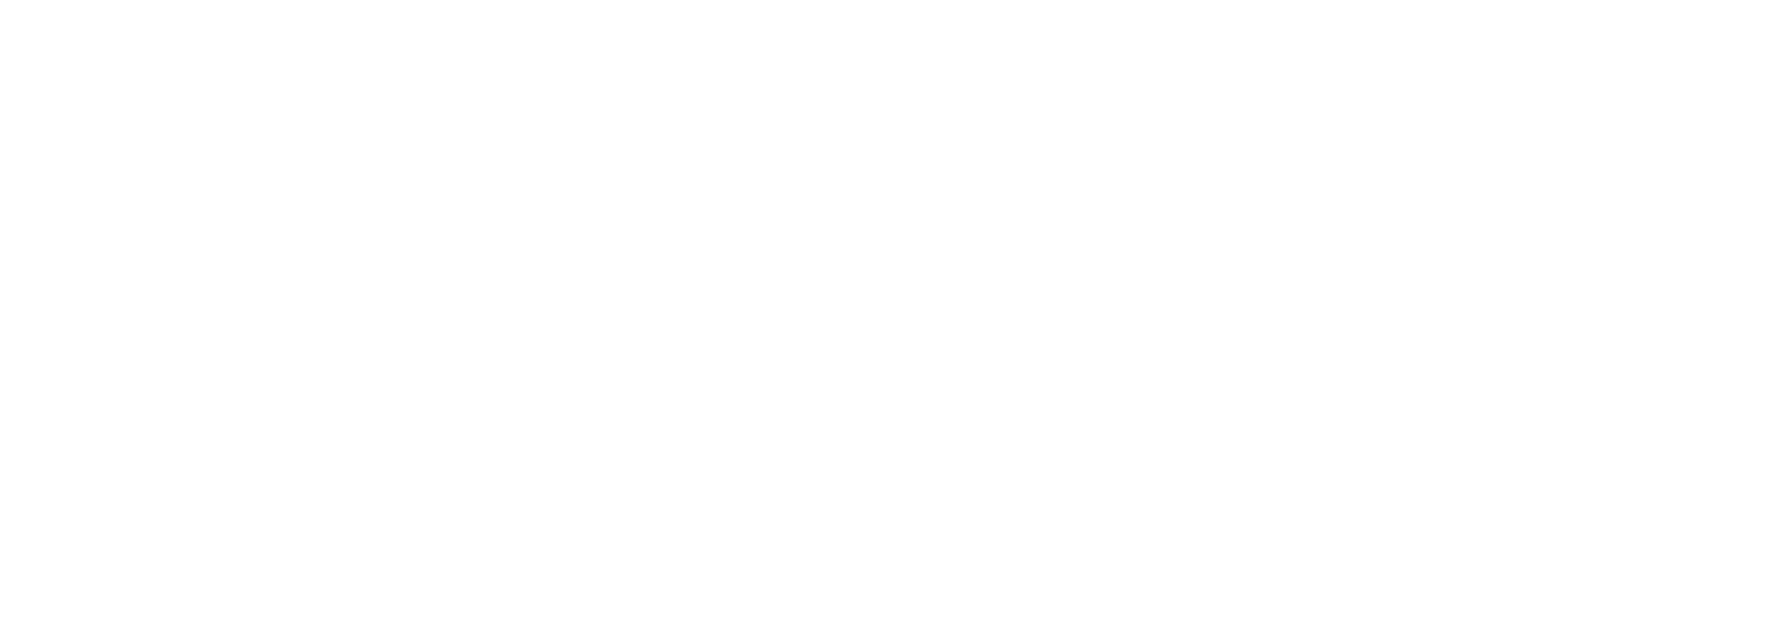 gpuf logo